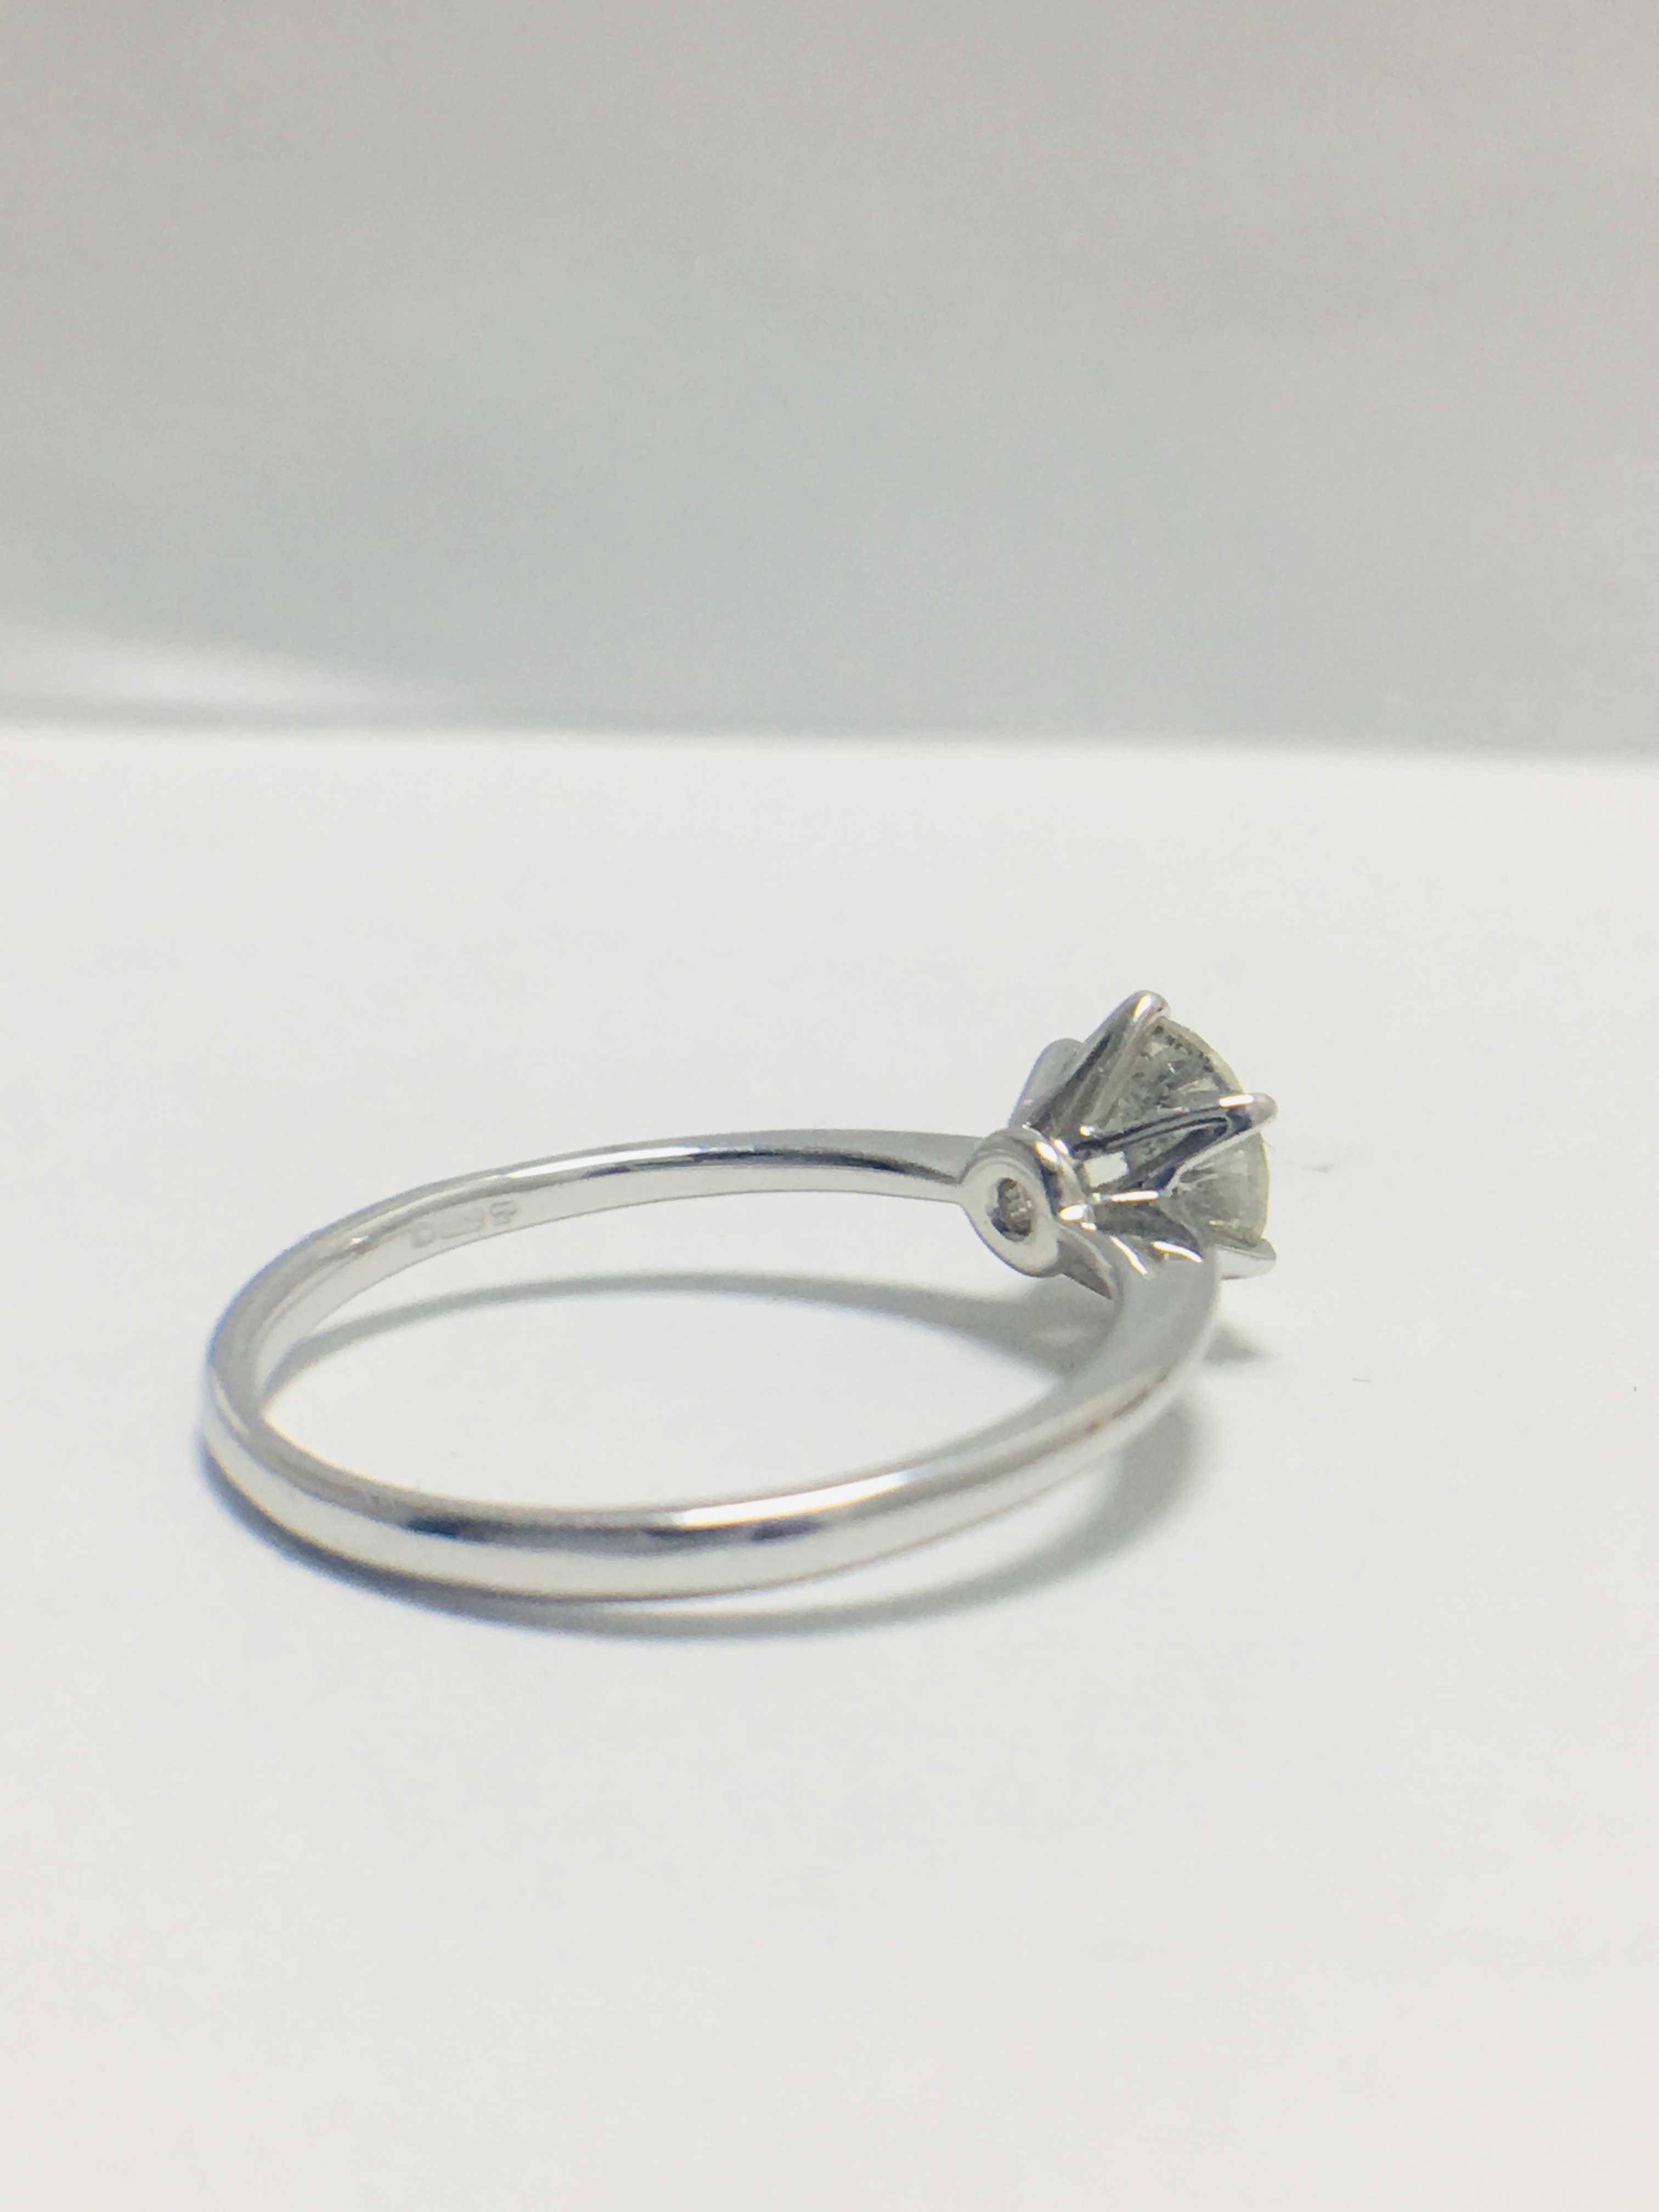 1ct platinum Diamond solitaire ring - Image 5 of 10